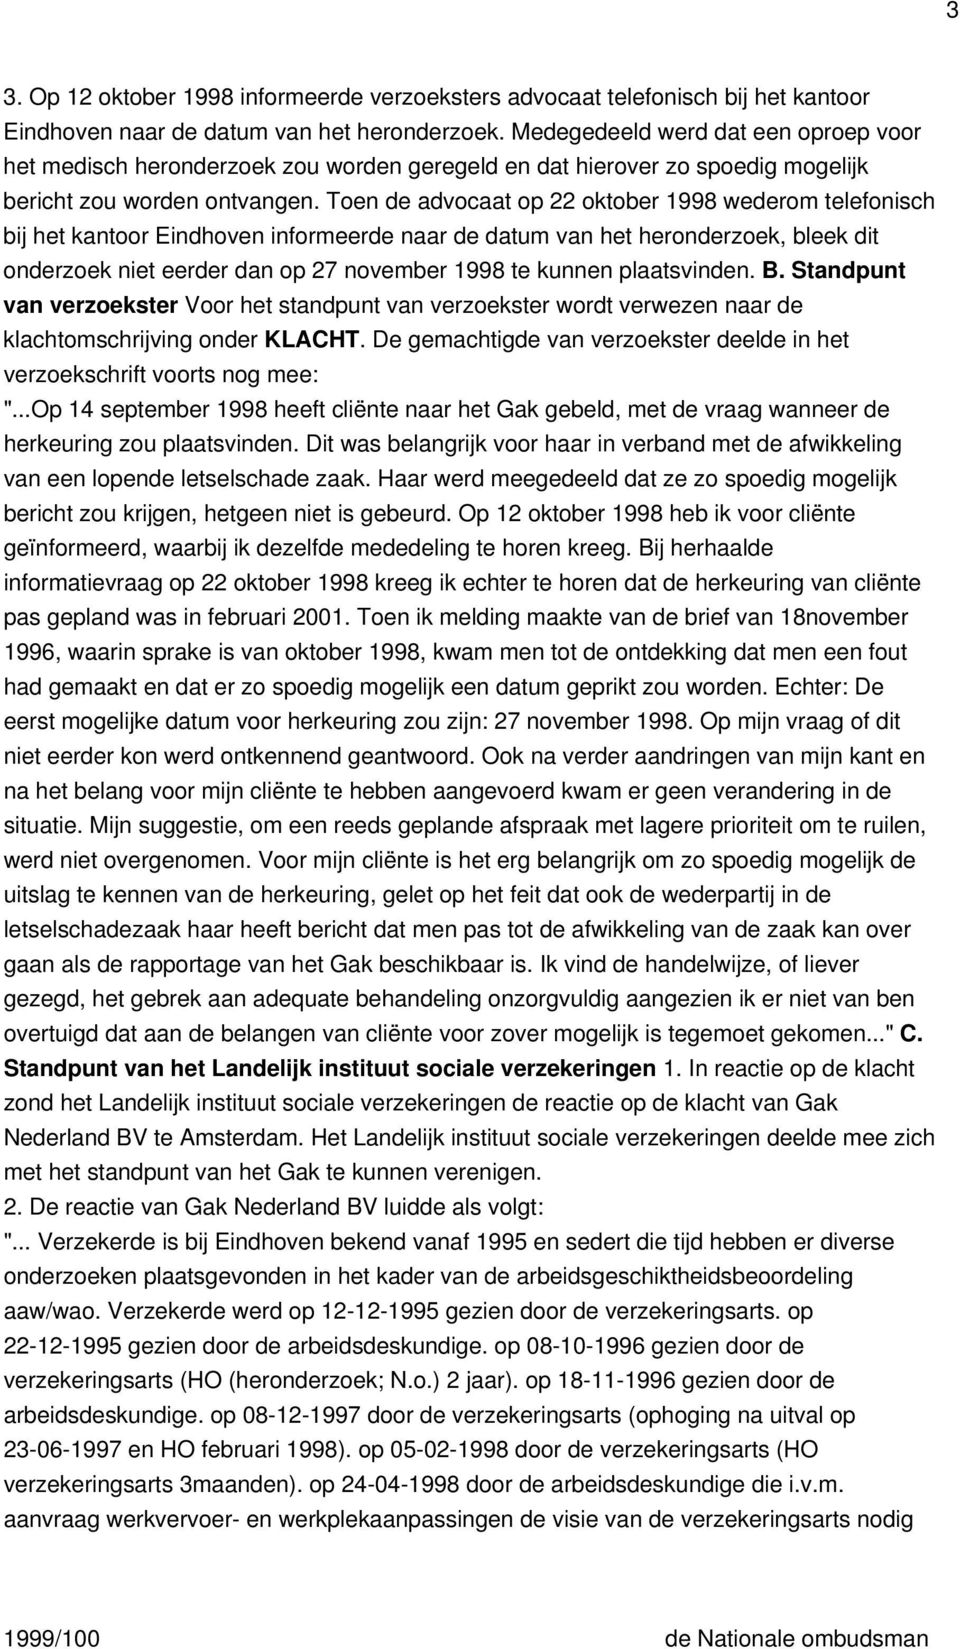 Toen de advocaat op 22 oktober 1998 wederom telefonisch bij het kantoor Eindhoven informeerde naar de datum van het heronderzoek, bleek dit onderzoek niet eerder dan op 27 november 1998 te kunnen